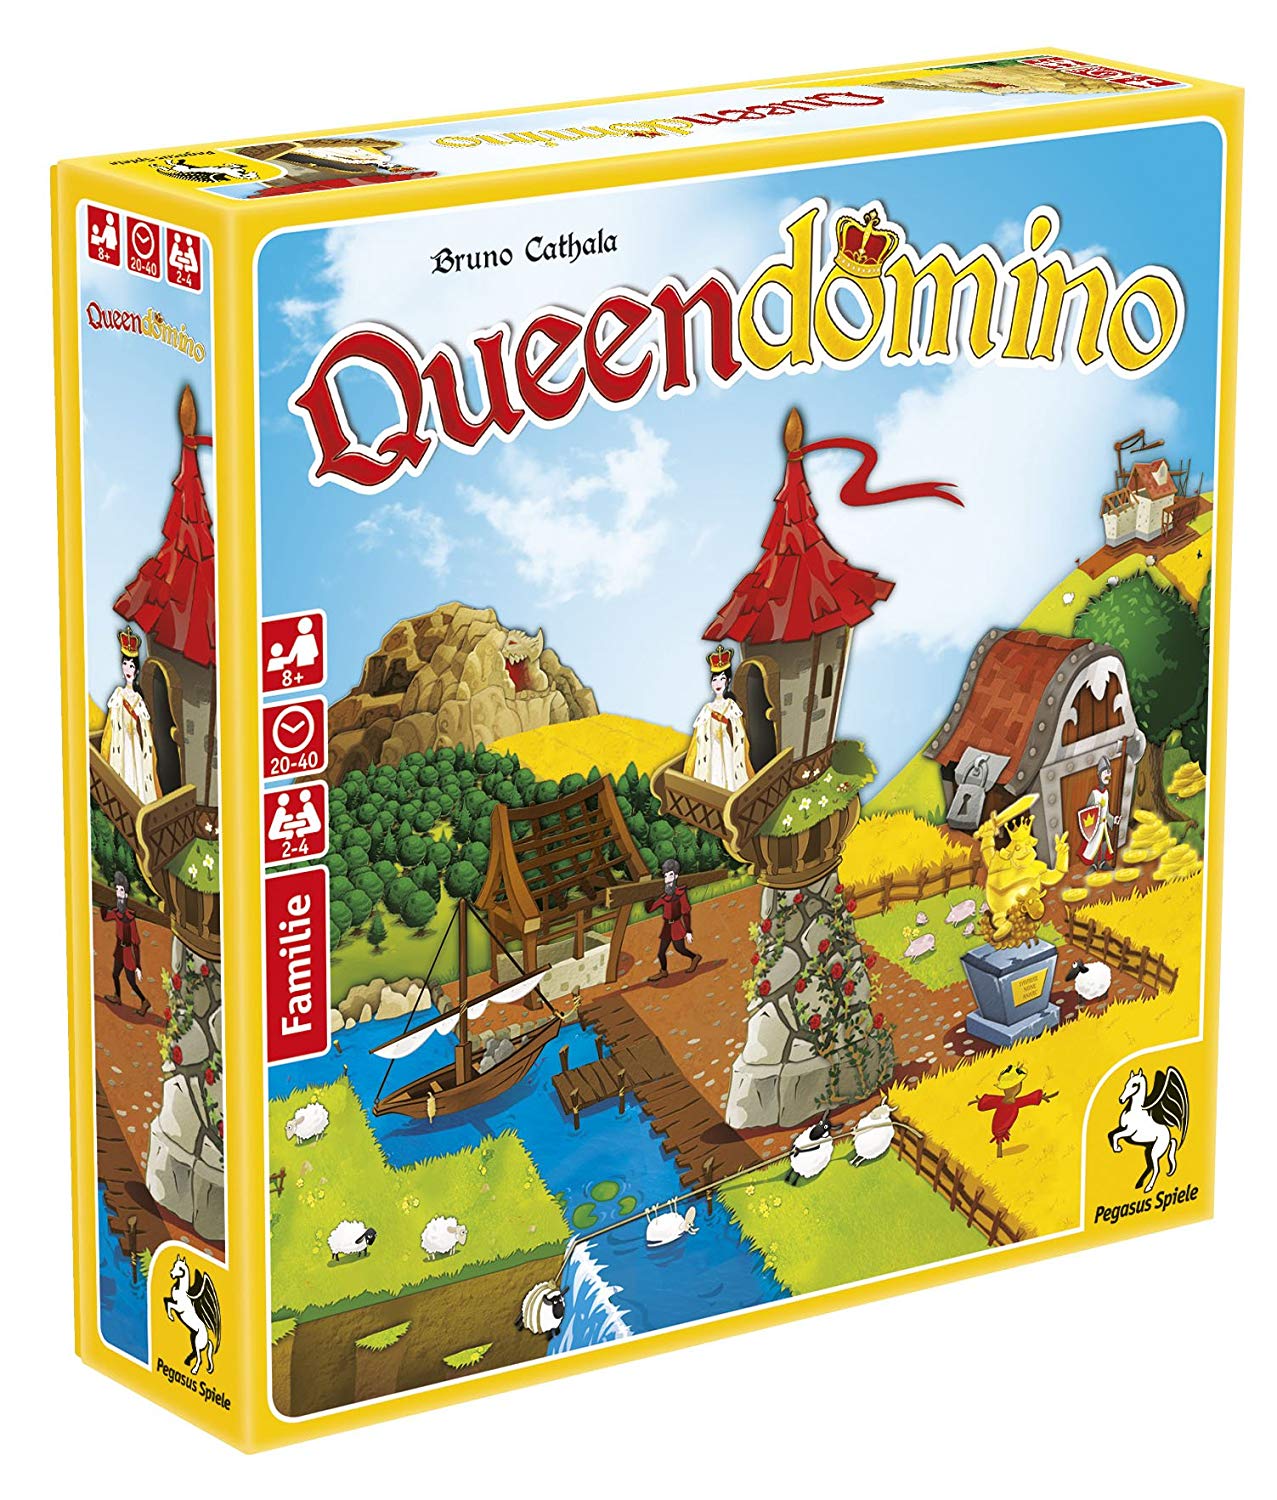 Pegasus Spiele G Queen Domino